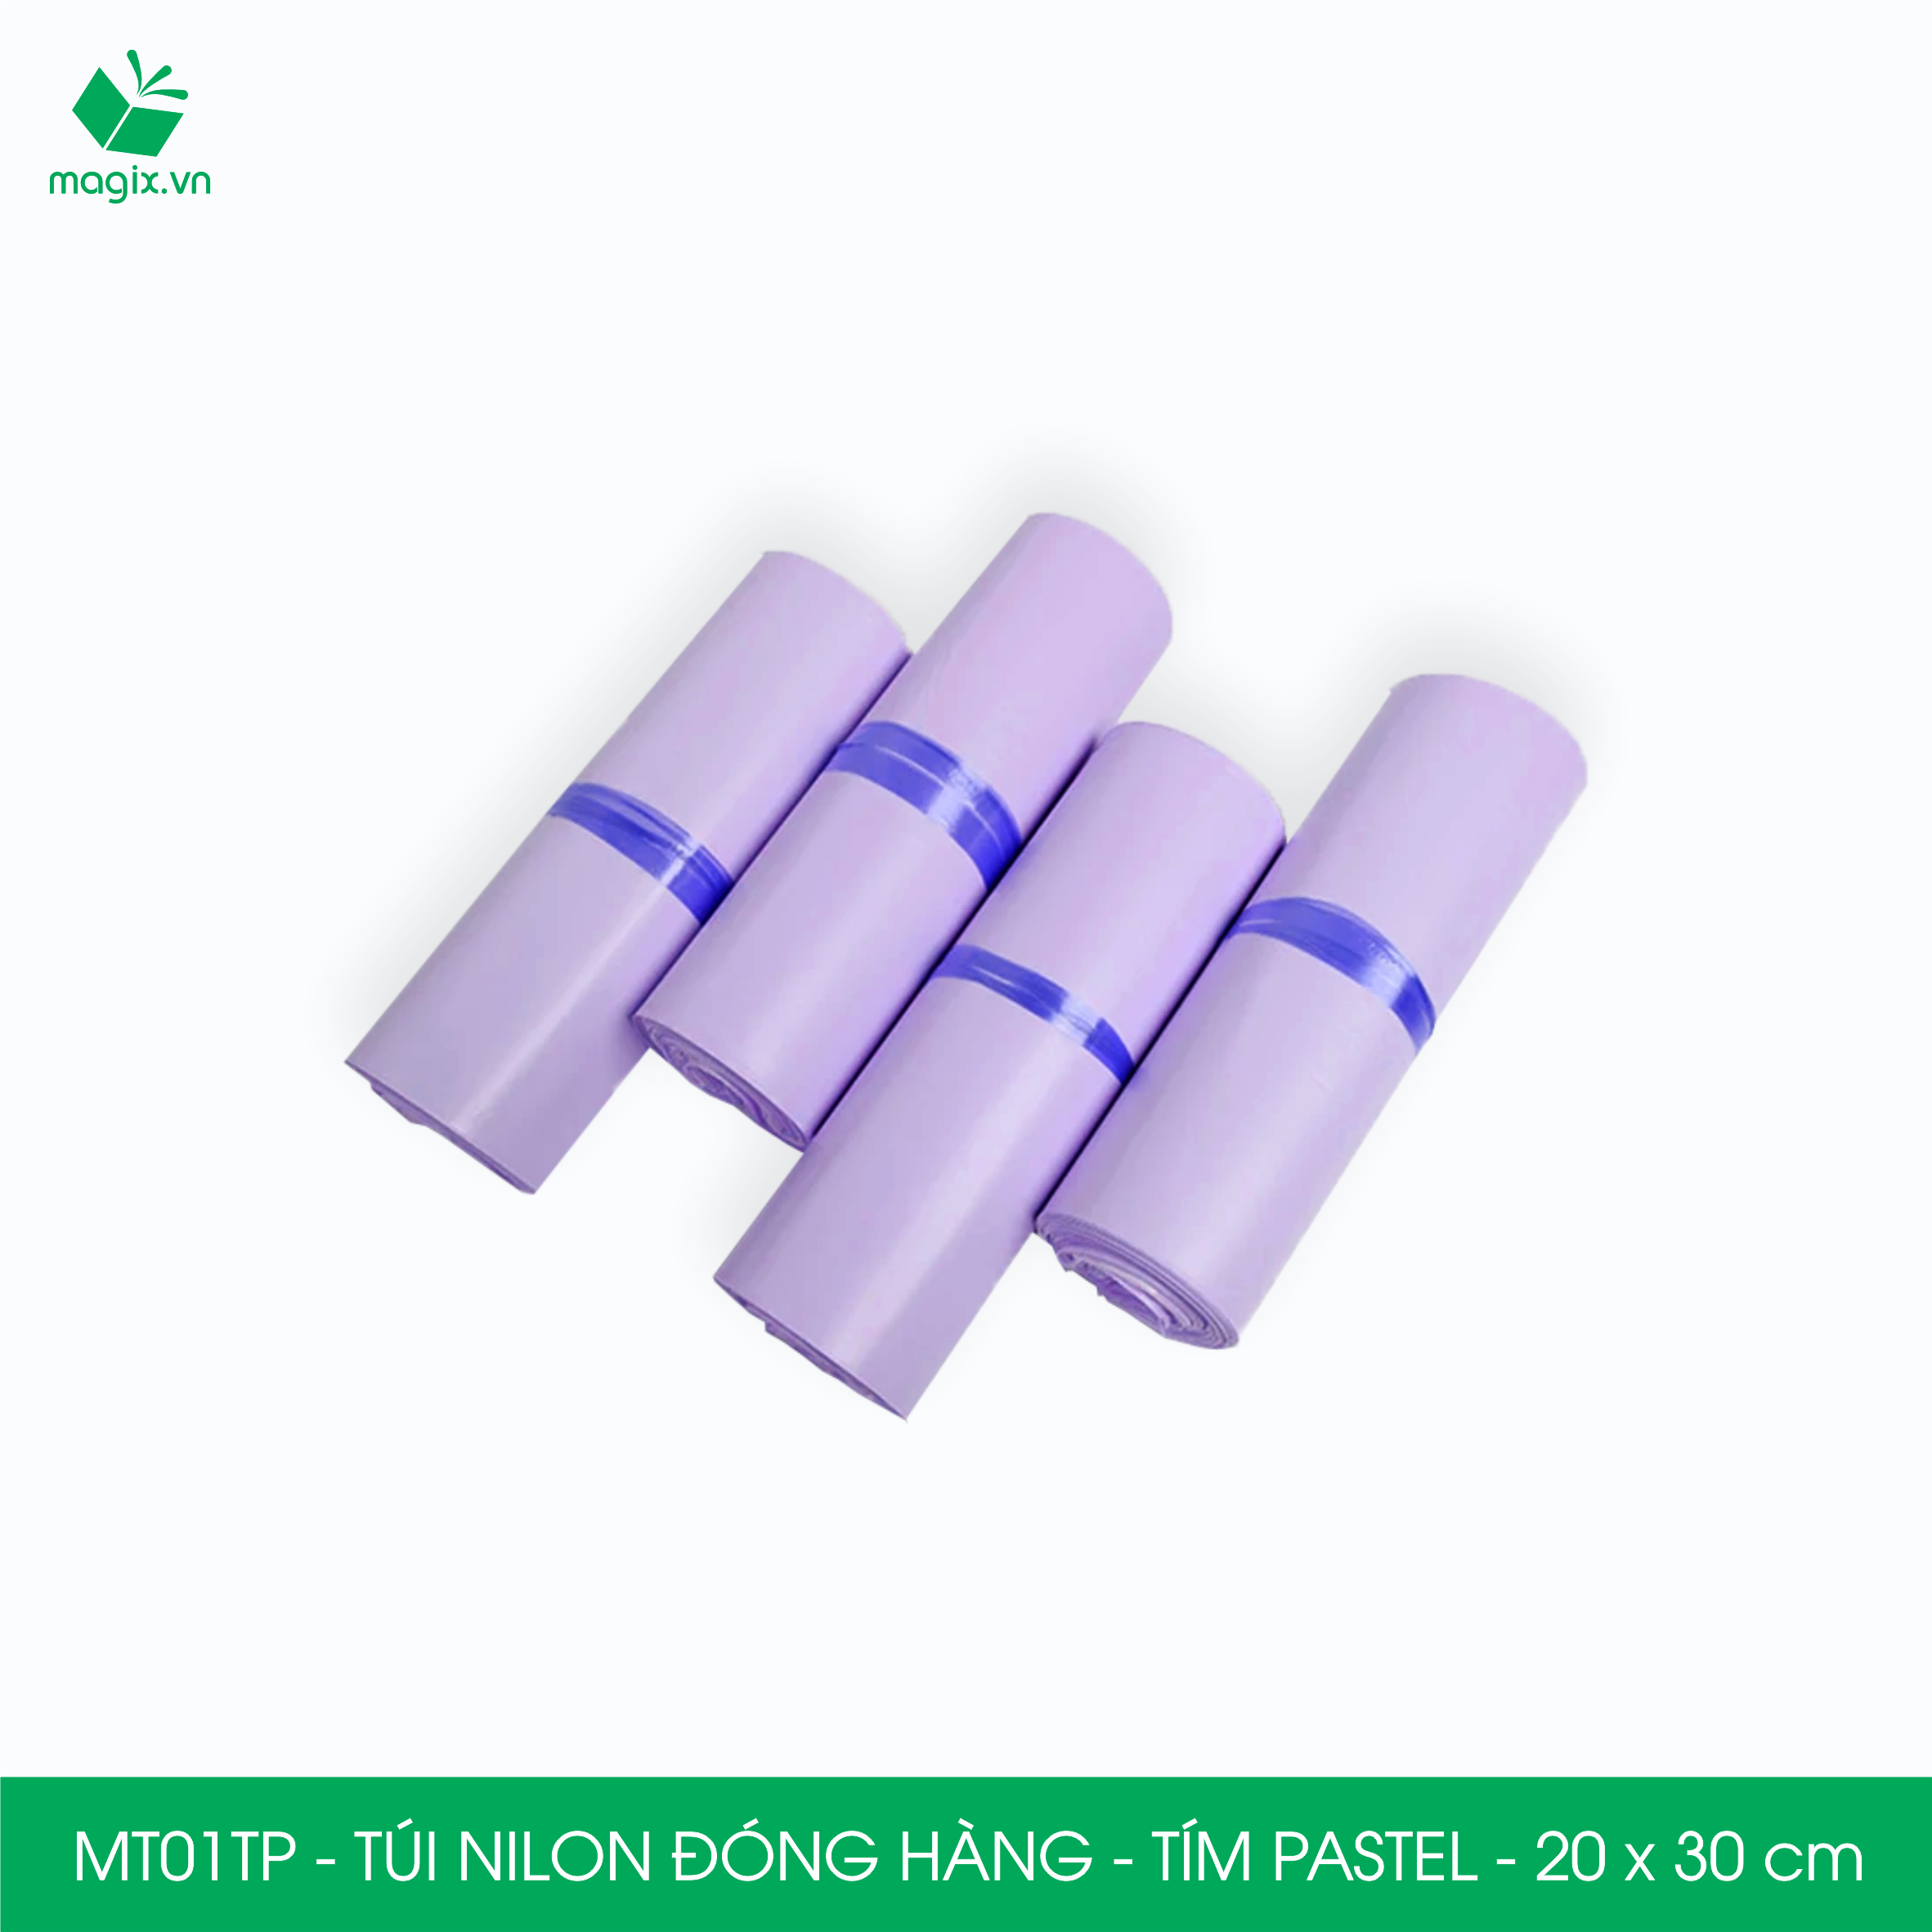 MT01TP - 20x30 cm  - Túi nilon gói hàng - 100 túi niêm phong đóng hàng màu xanh pastel tím pastel